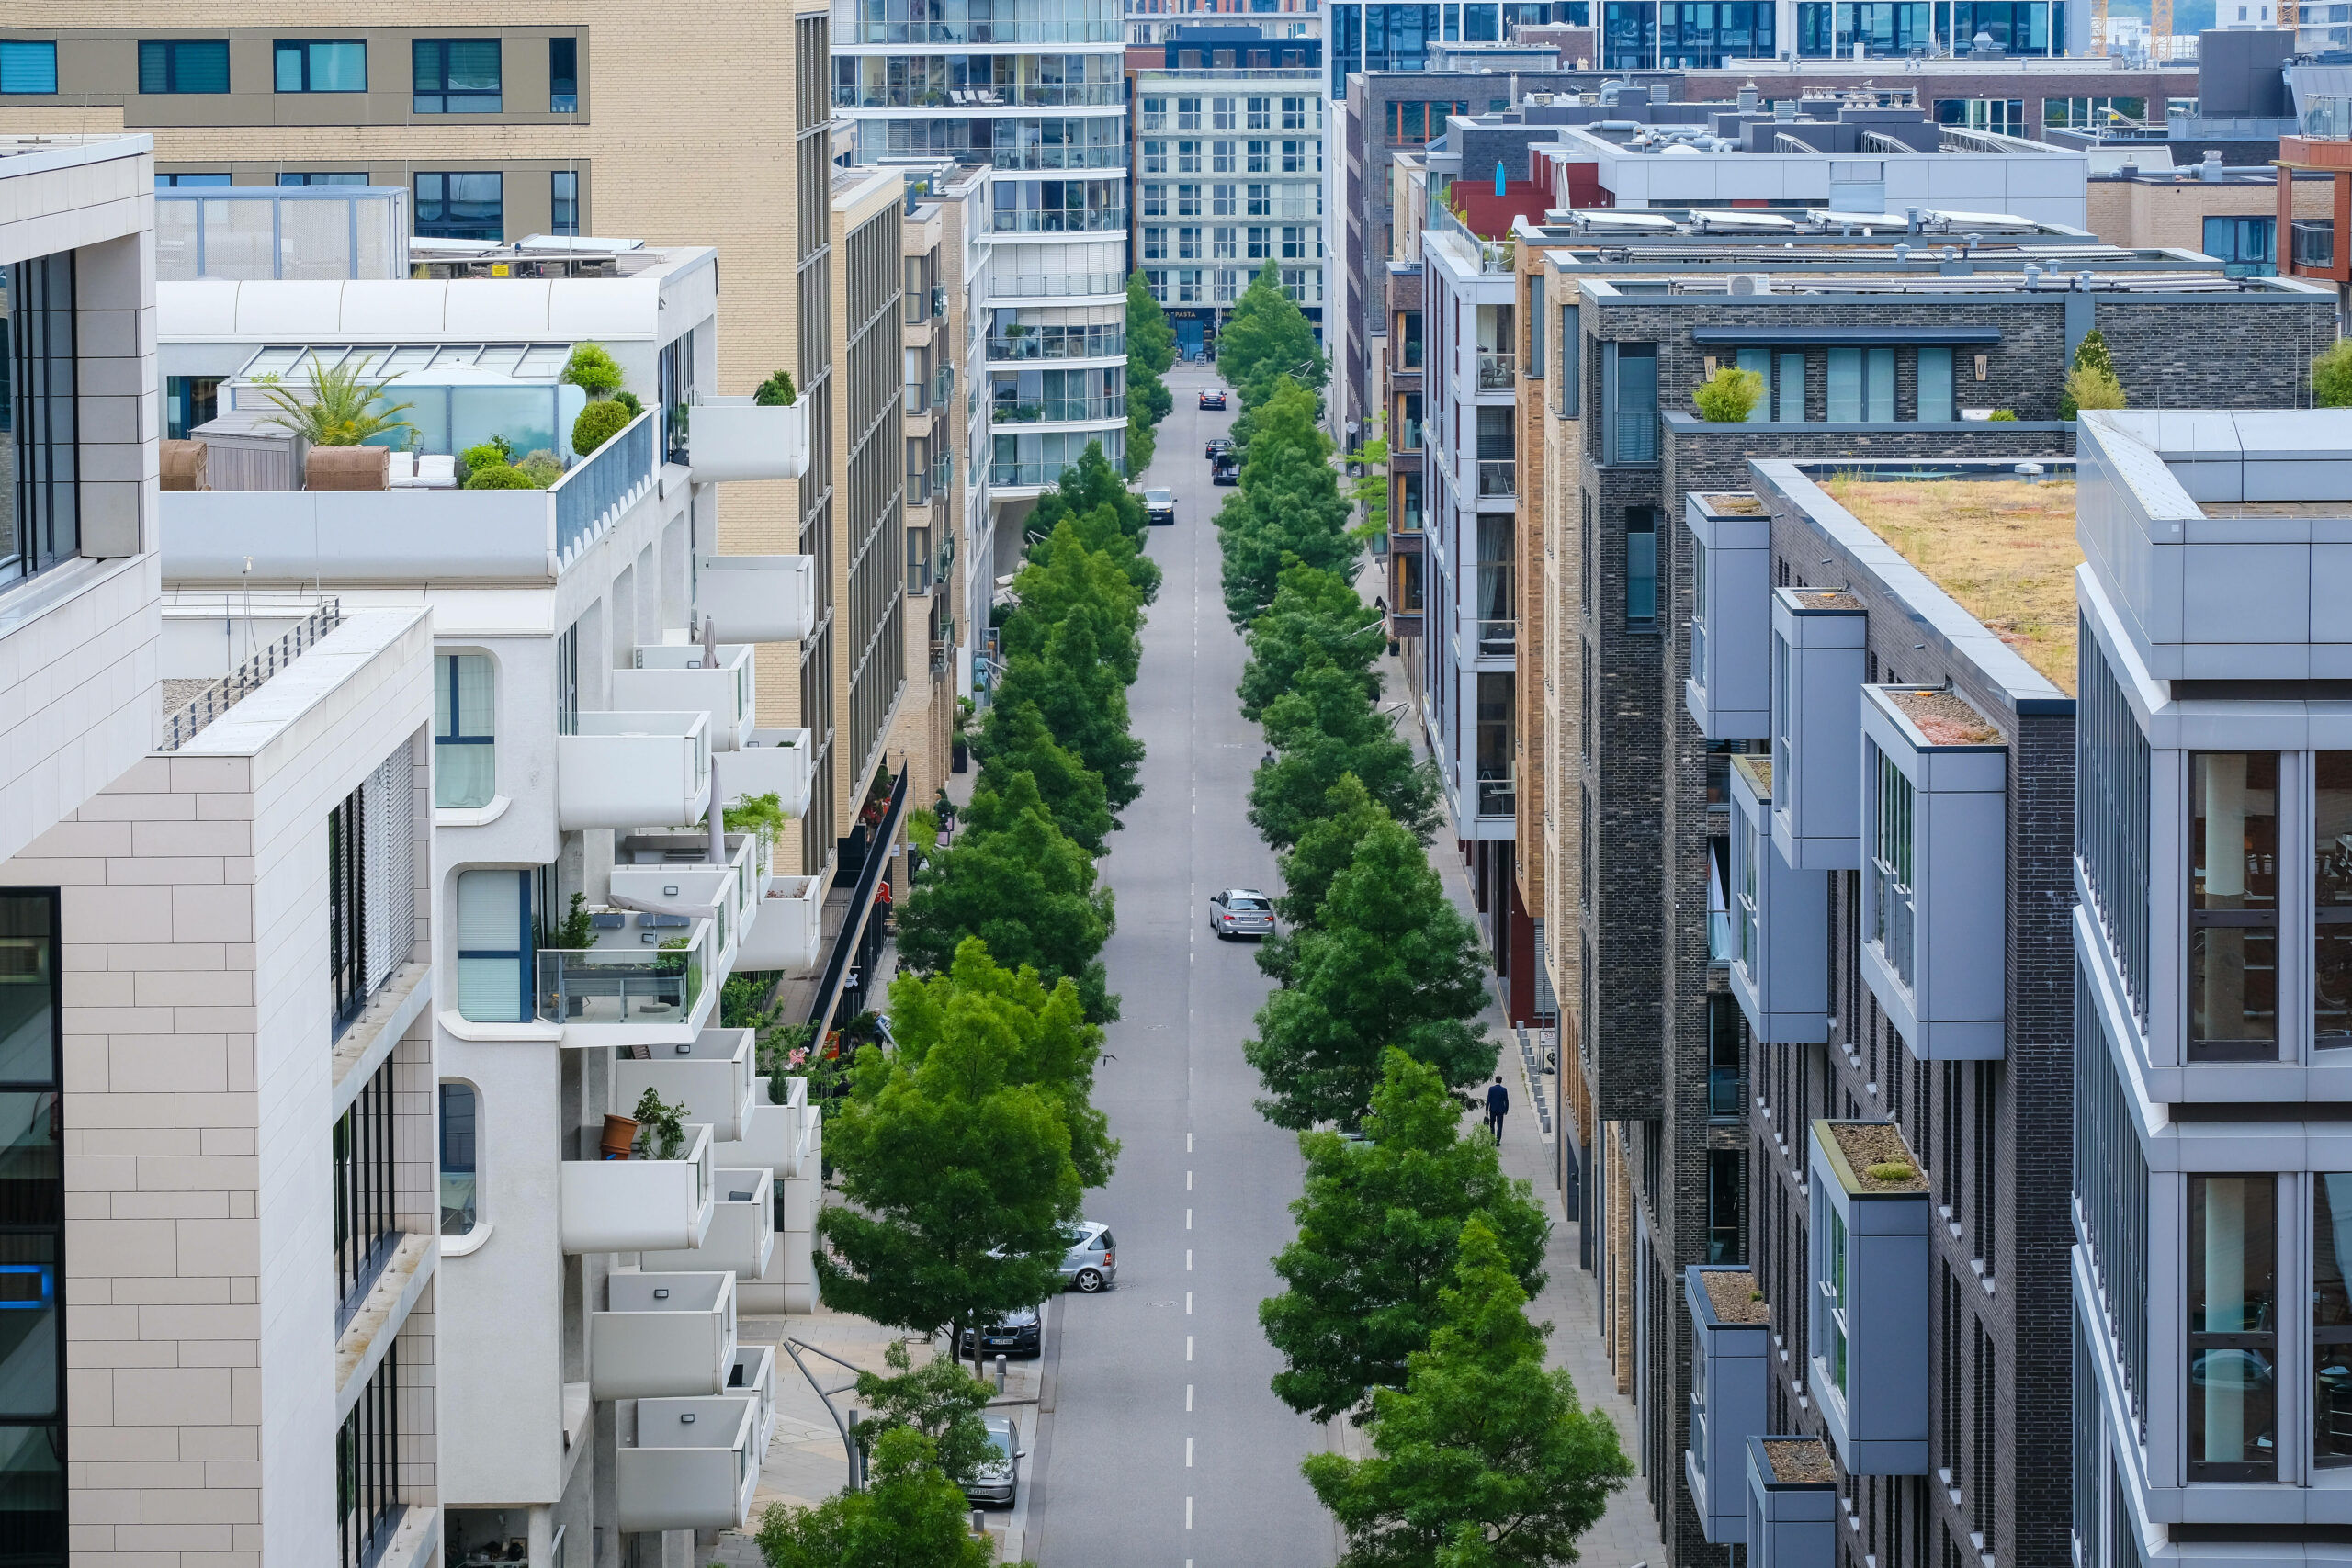 Bauen ist teuer und kompliziert: Hamburg will die Wohnungsnot jetzt mit einem neuen Konzept lösen.